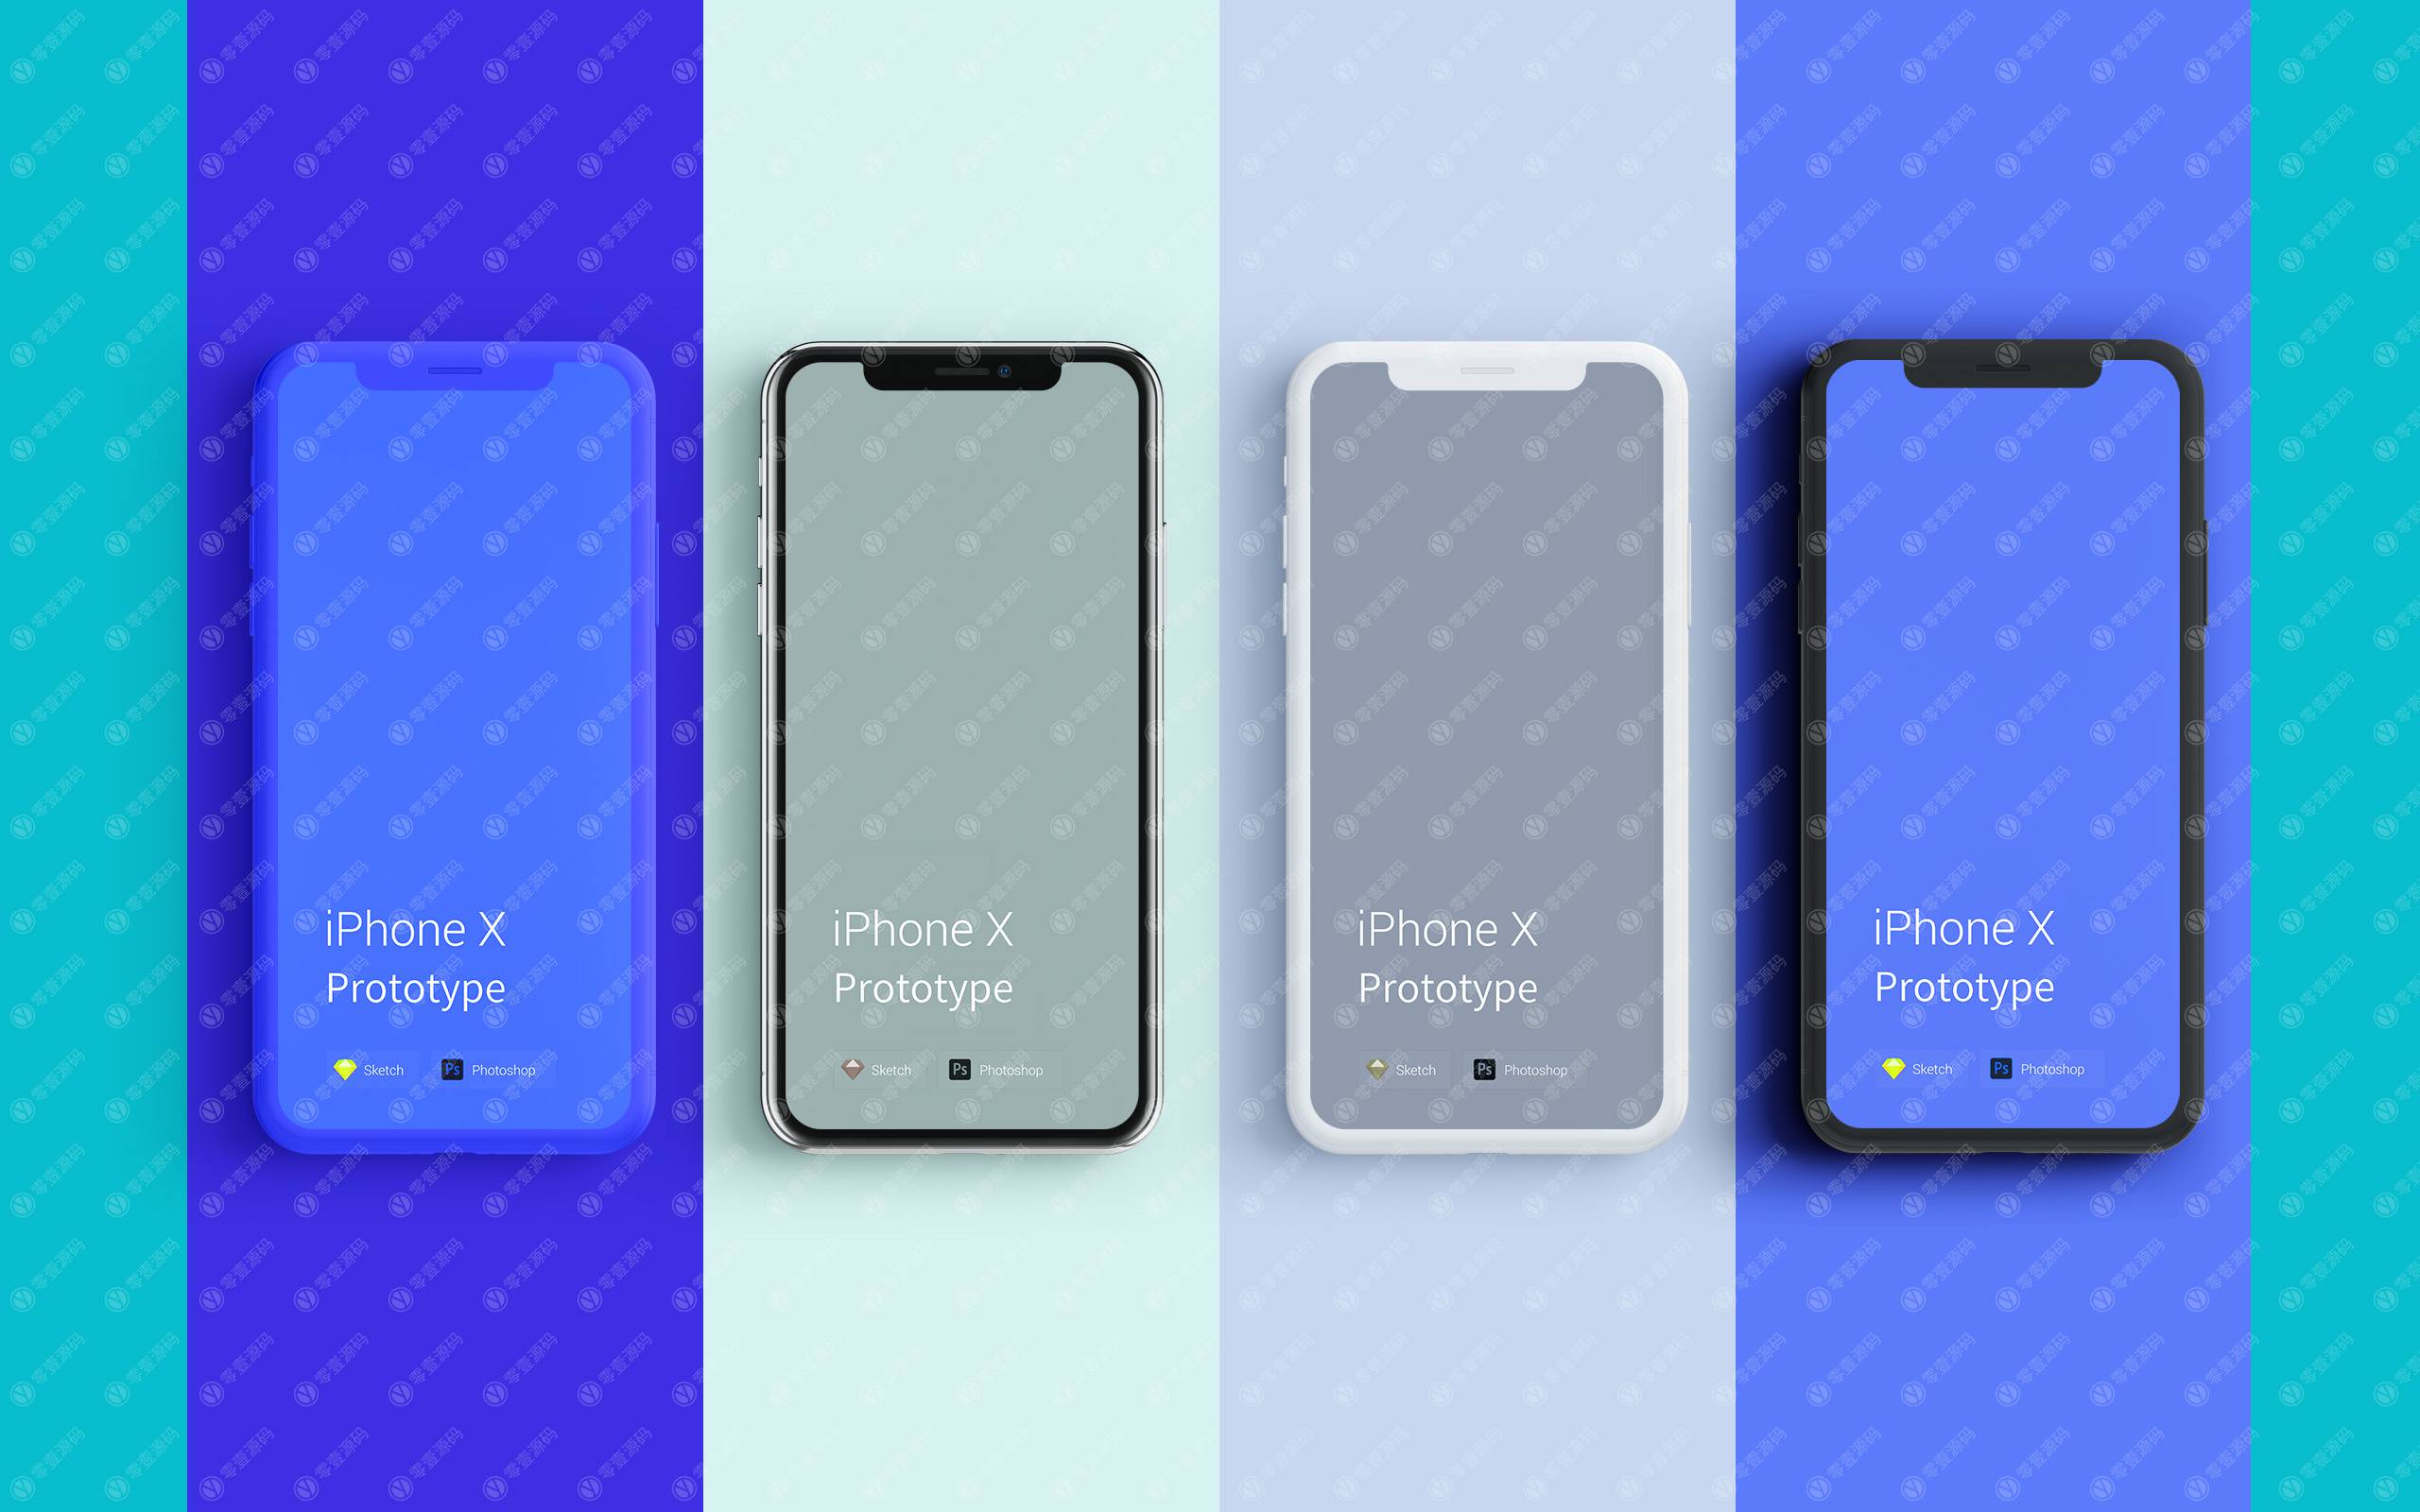 iPhoneX Mockups 苹果X手机样机四色组合模型素材psd源文件